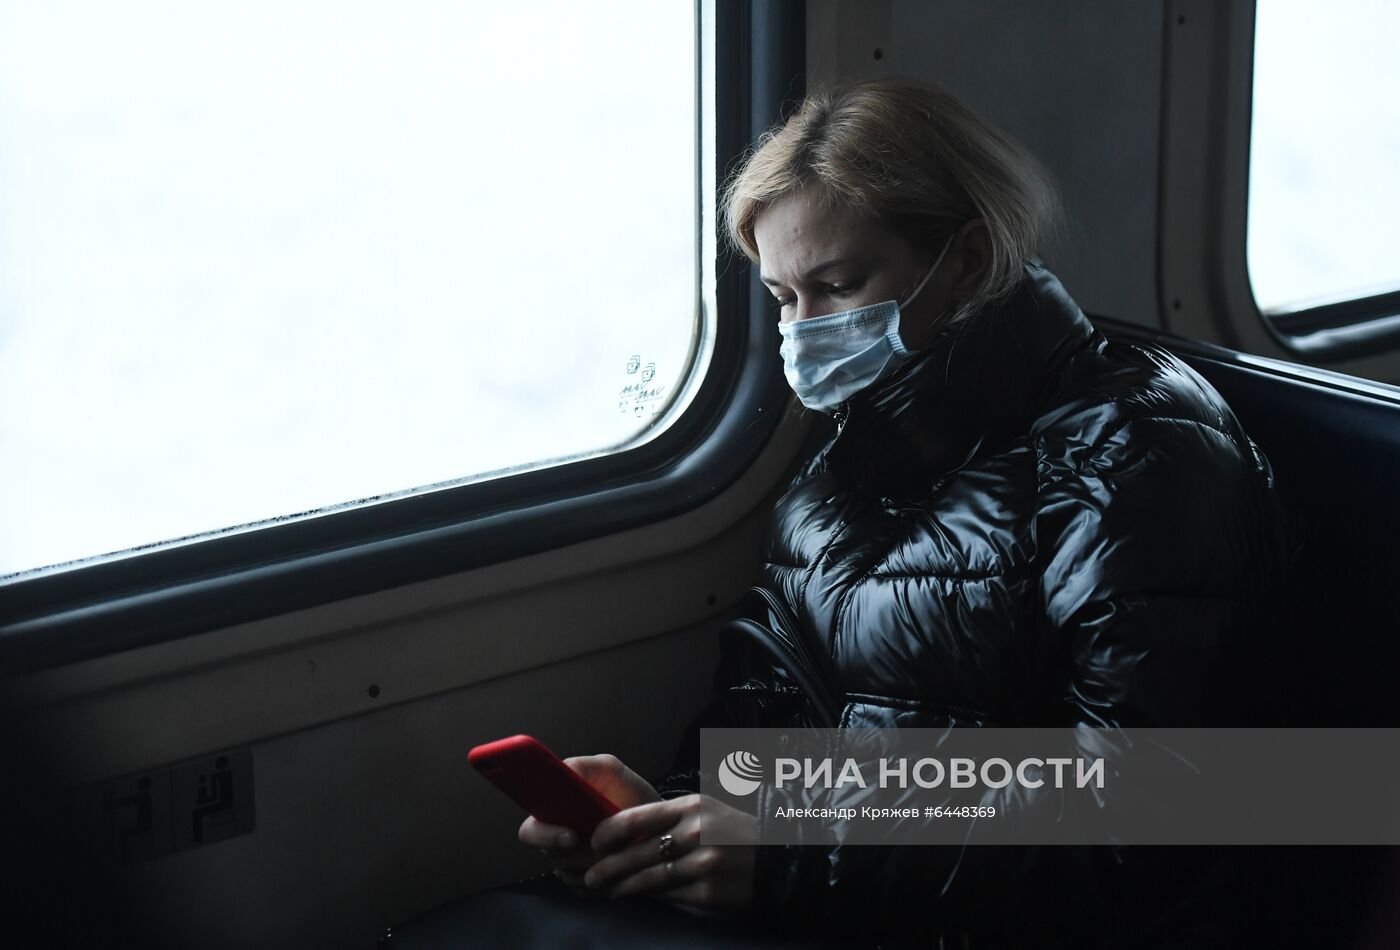 Рейд по соблюдению масочного режима в электричках Новосибирска